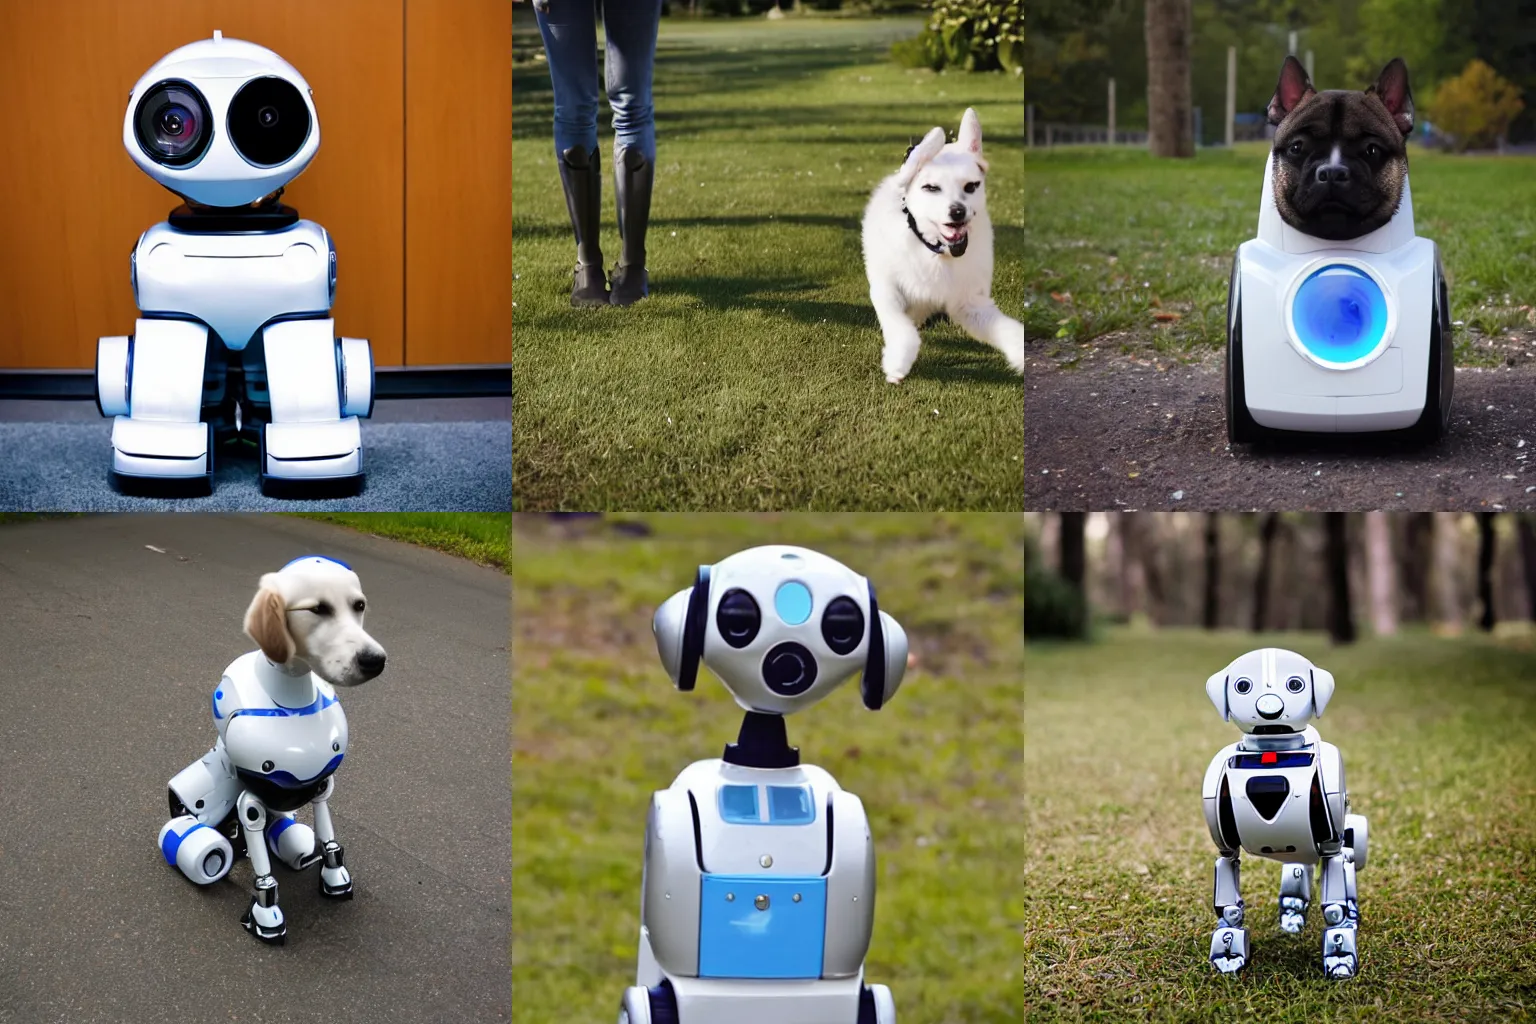 Prompt: A robot dog, photo taken by a nikon